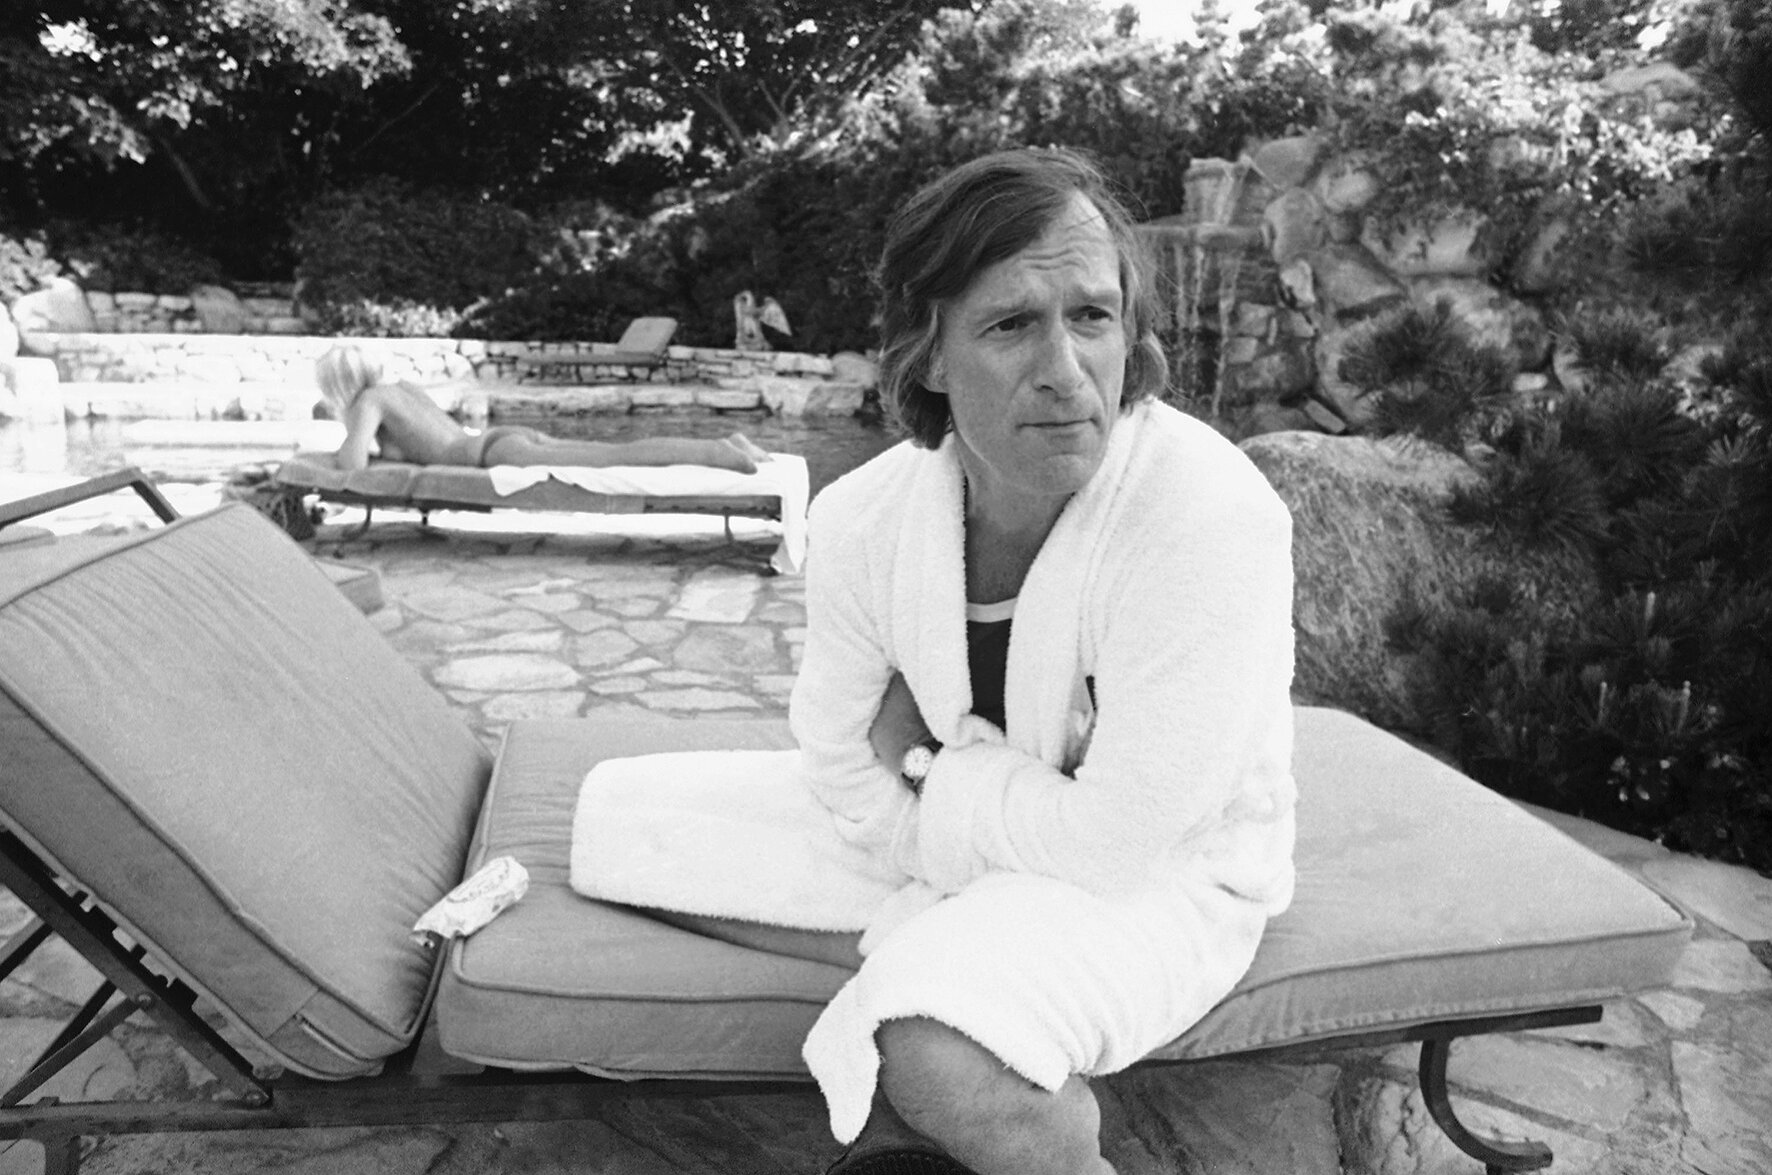 <p>Хью Хефнер на заднем дворе своего особняка в Лос-Анджелесе дает интервью корреспонденту Playboy Company, август&nbsp;1975 года.</p>

<p>&nbsp;</p>